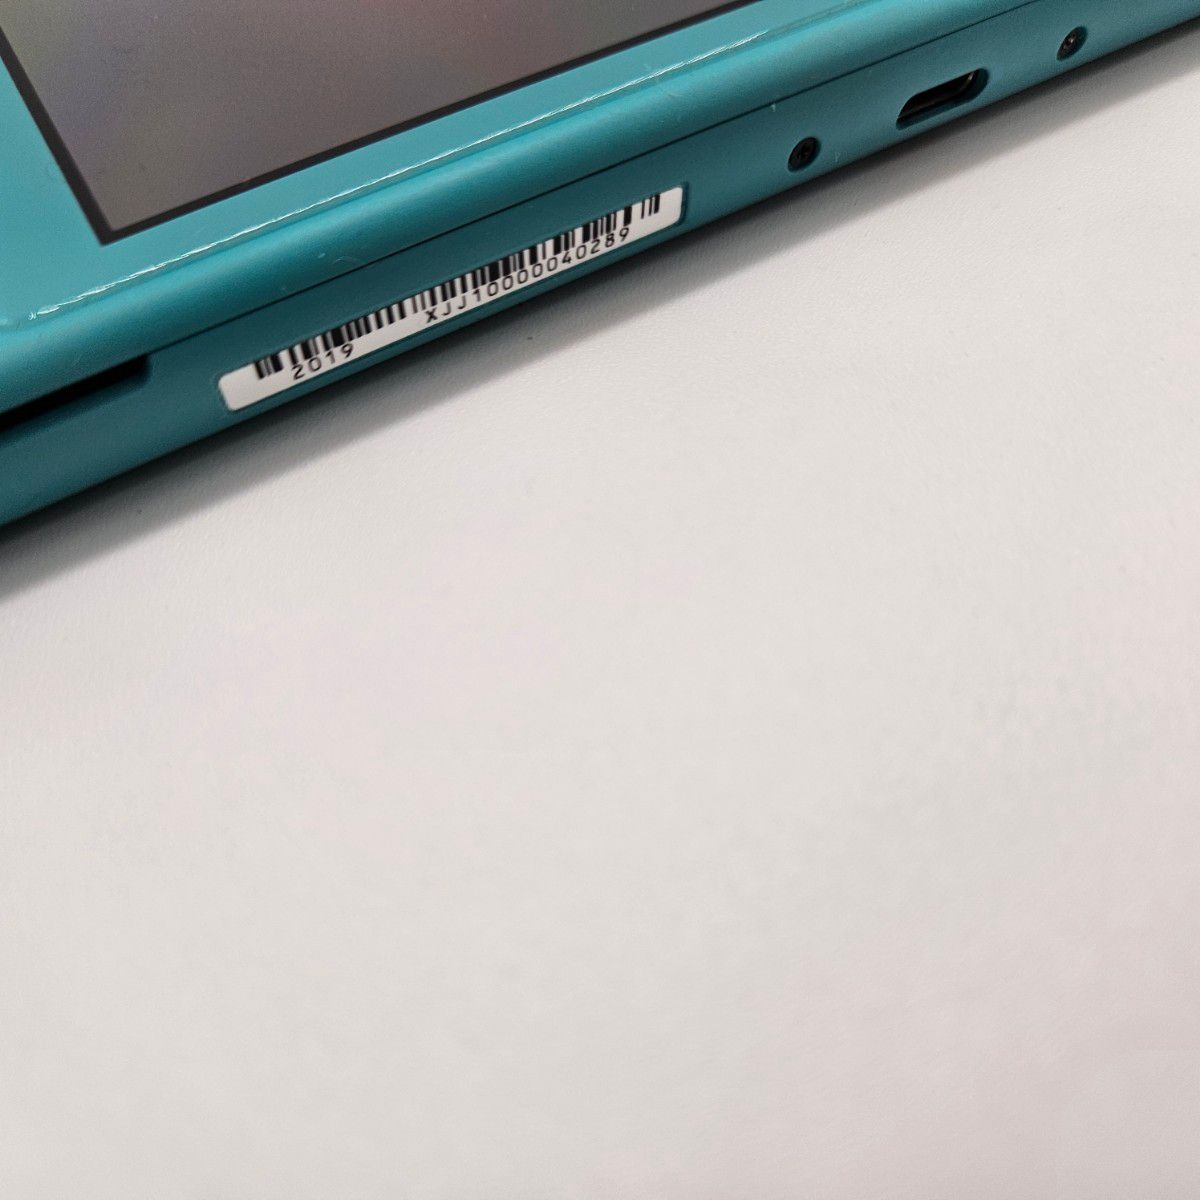 Nintendo Switch Lite ニンテンドースイッチライト　本体 ターコイズ